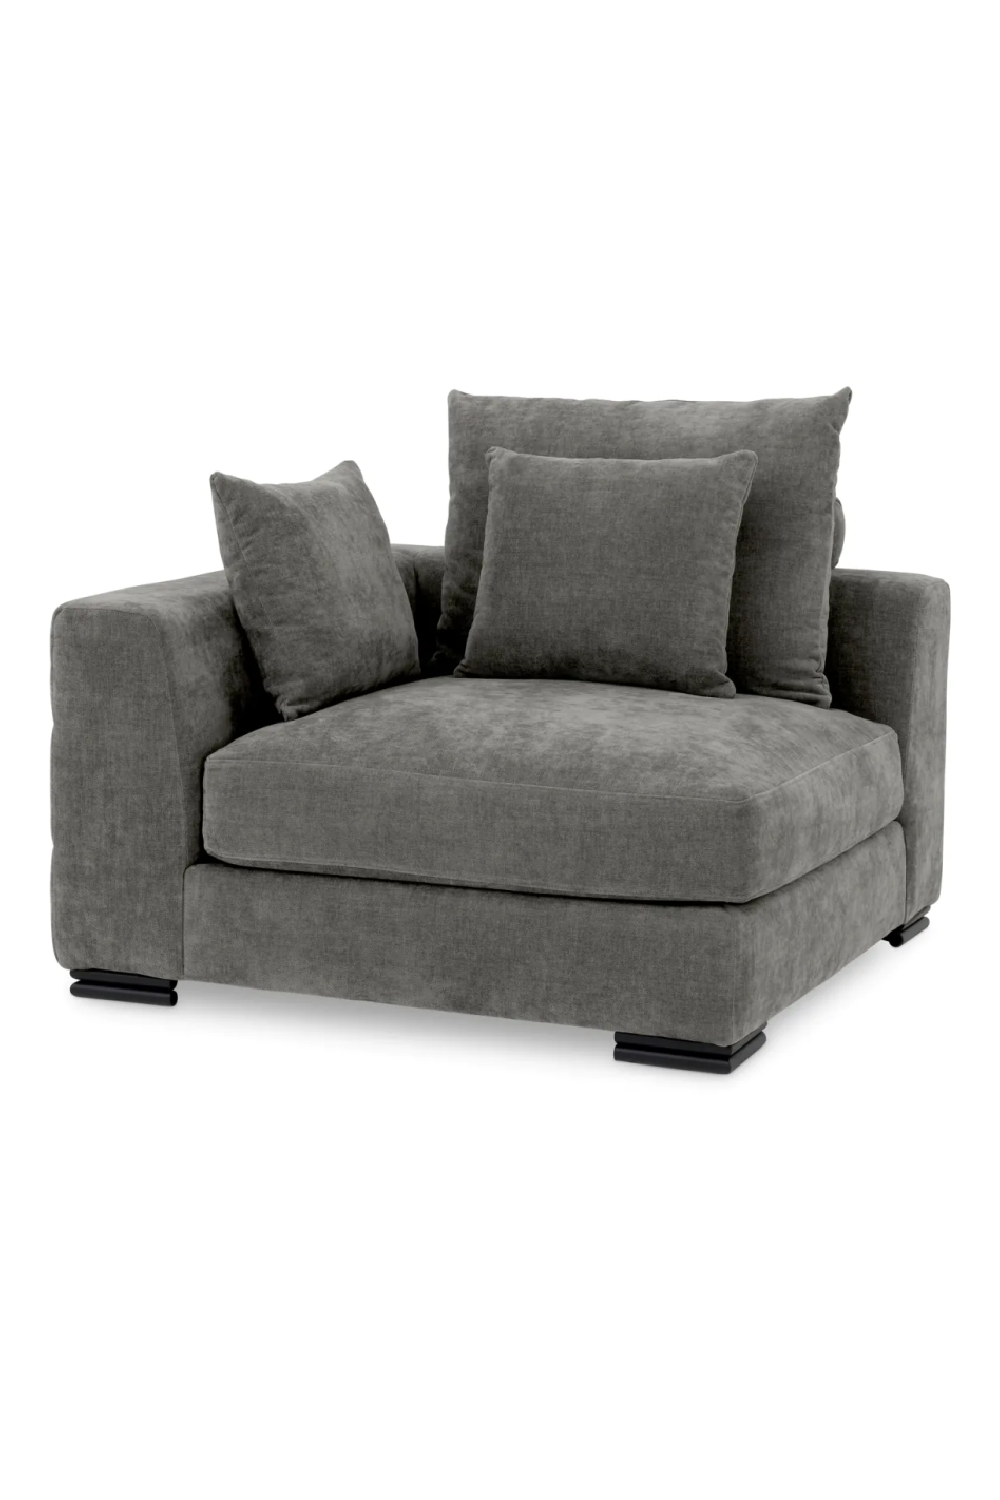 Gray Contemporary Sofa | Eichholtz Clifford